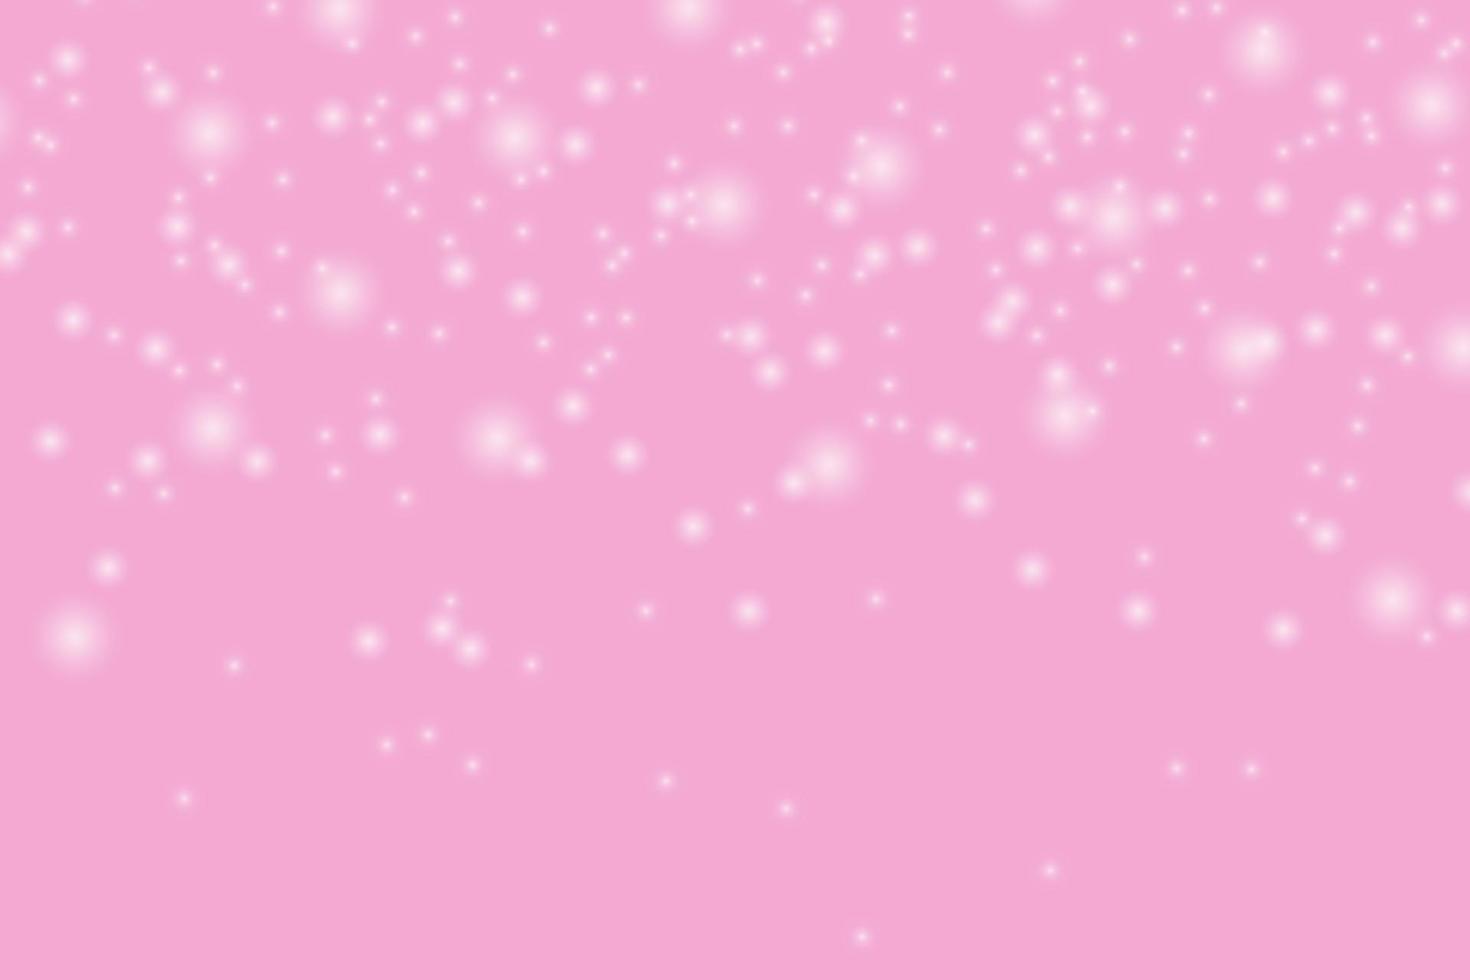 abstrakt bakgrund av stardust partiklar, silver stjärnor på en rosa bakgrund vektor